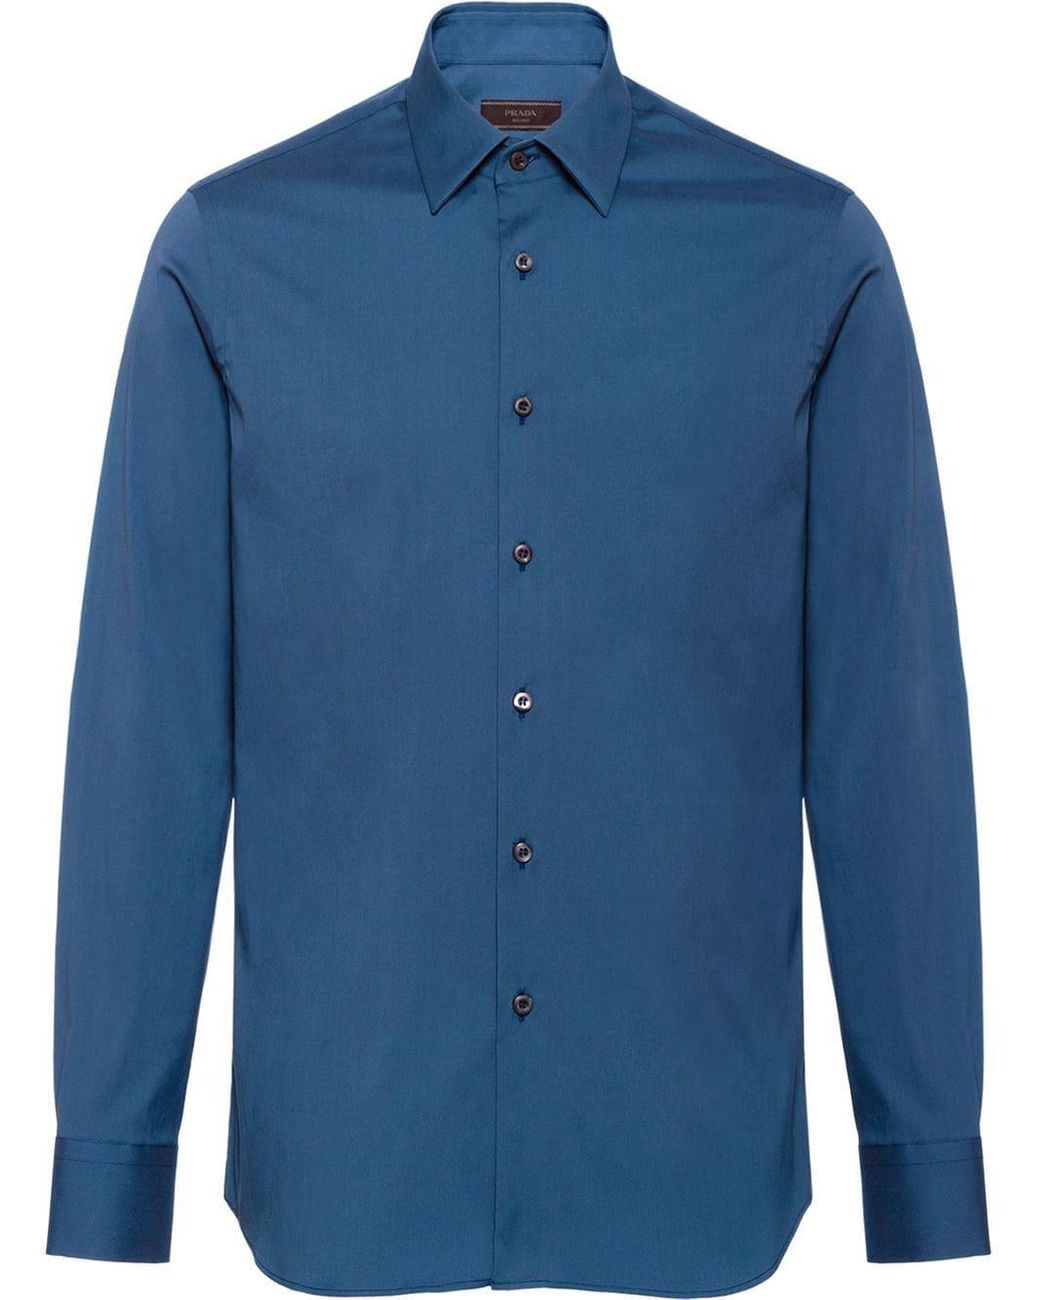 Prada Slim Fit Shirt in Blue for Men - Lyst